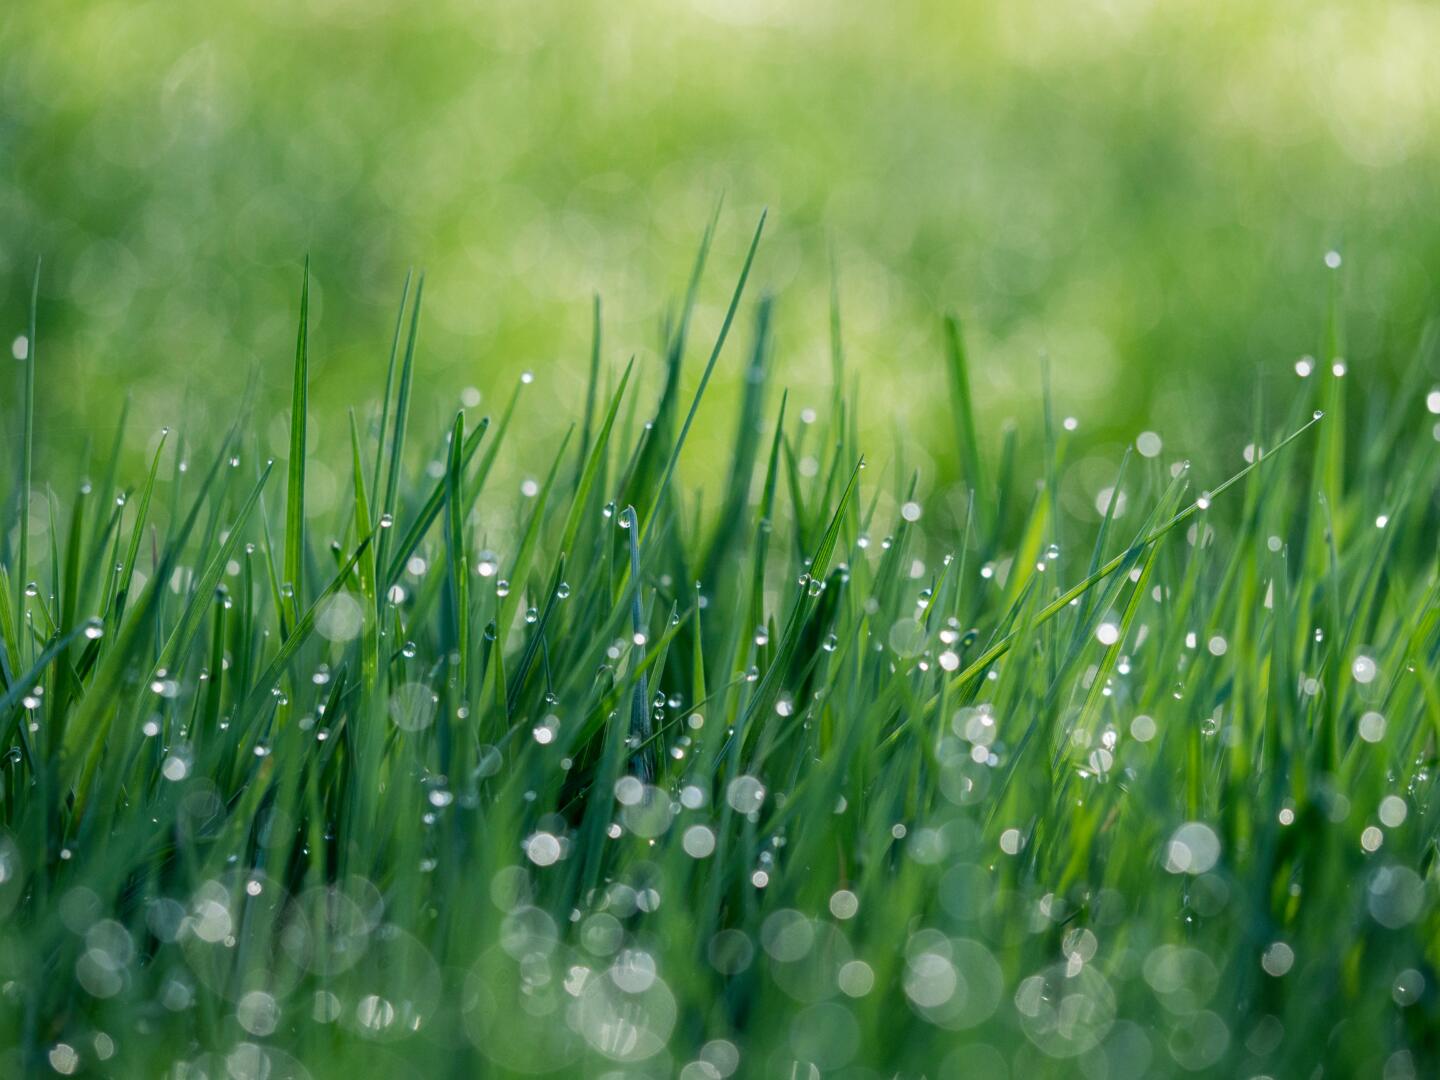 Gestresst gras kan mycotoxines bevatten